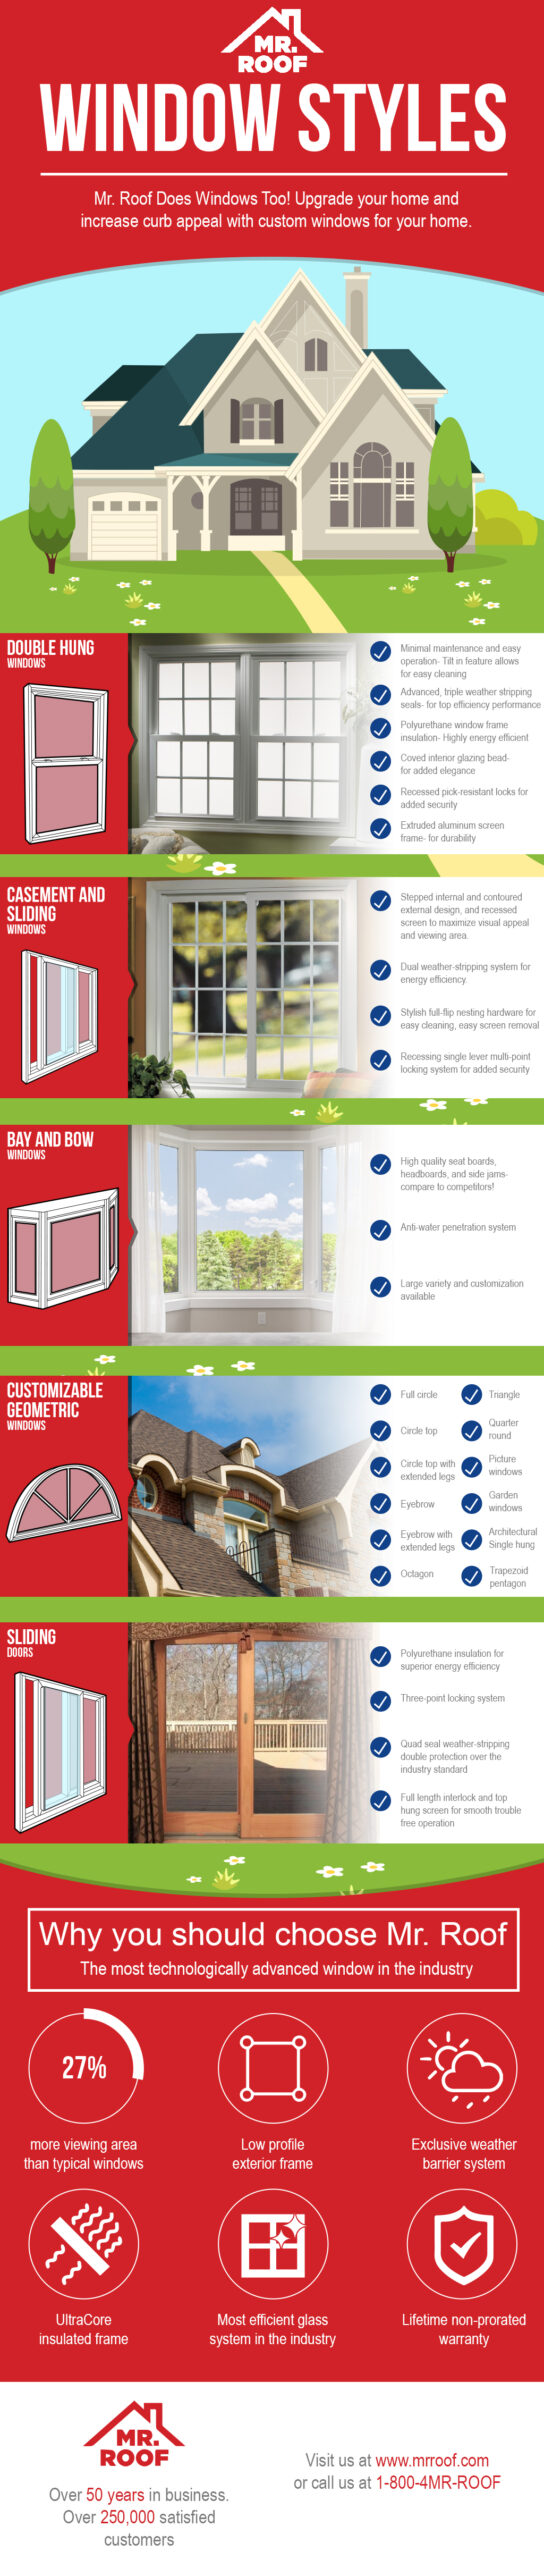 Window Styles Infographic